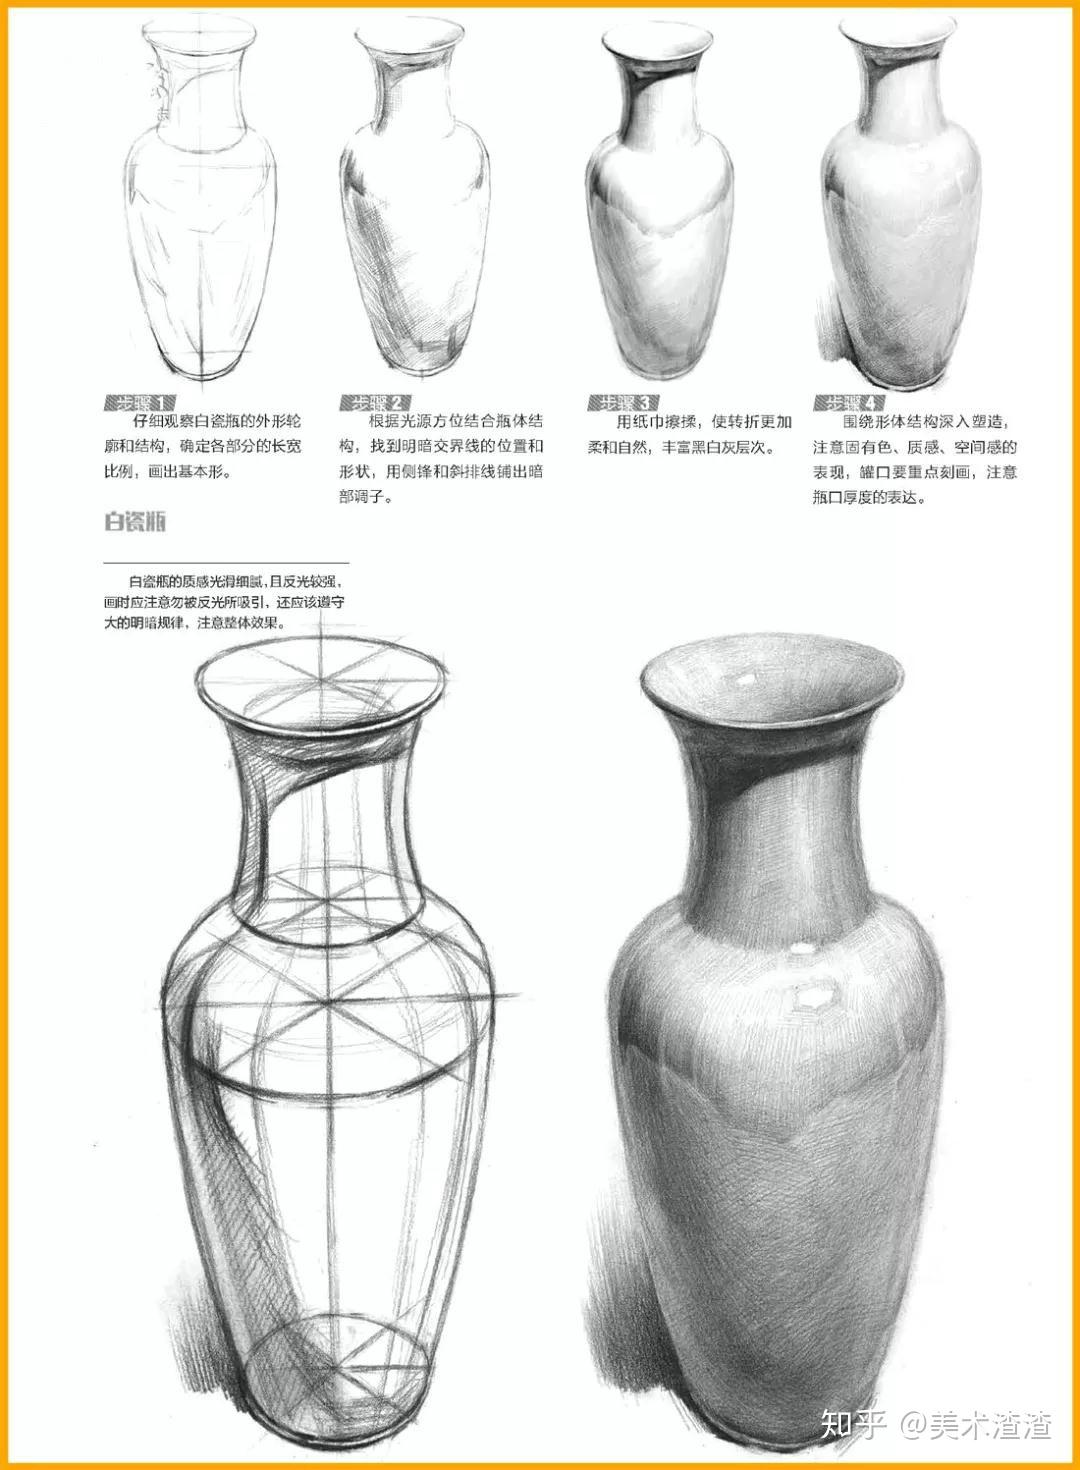 素描单体教学素描静物中罐子的结构特征及表现手法